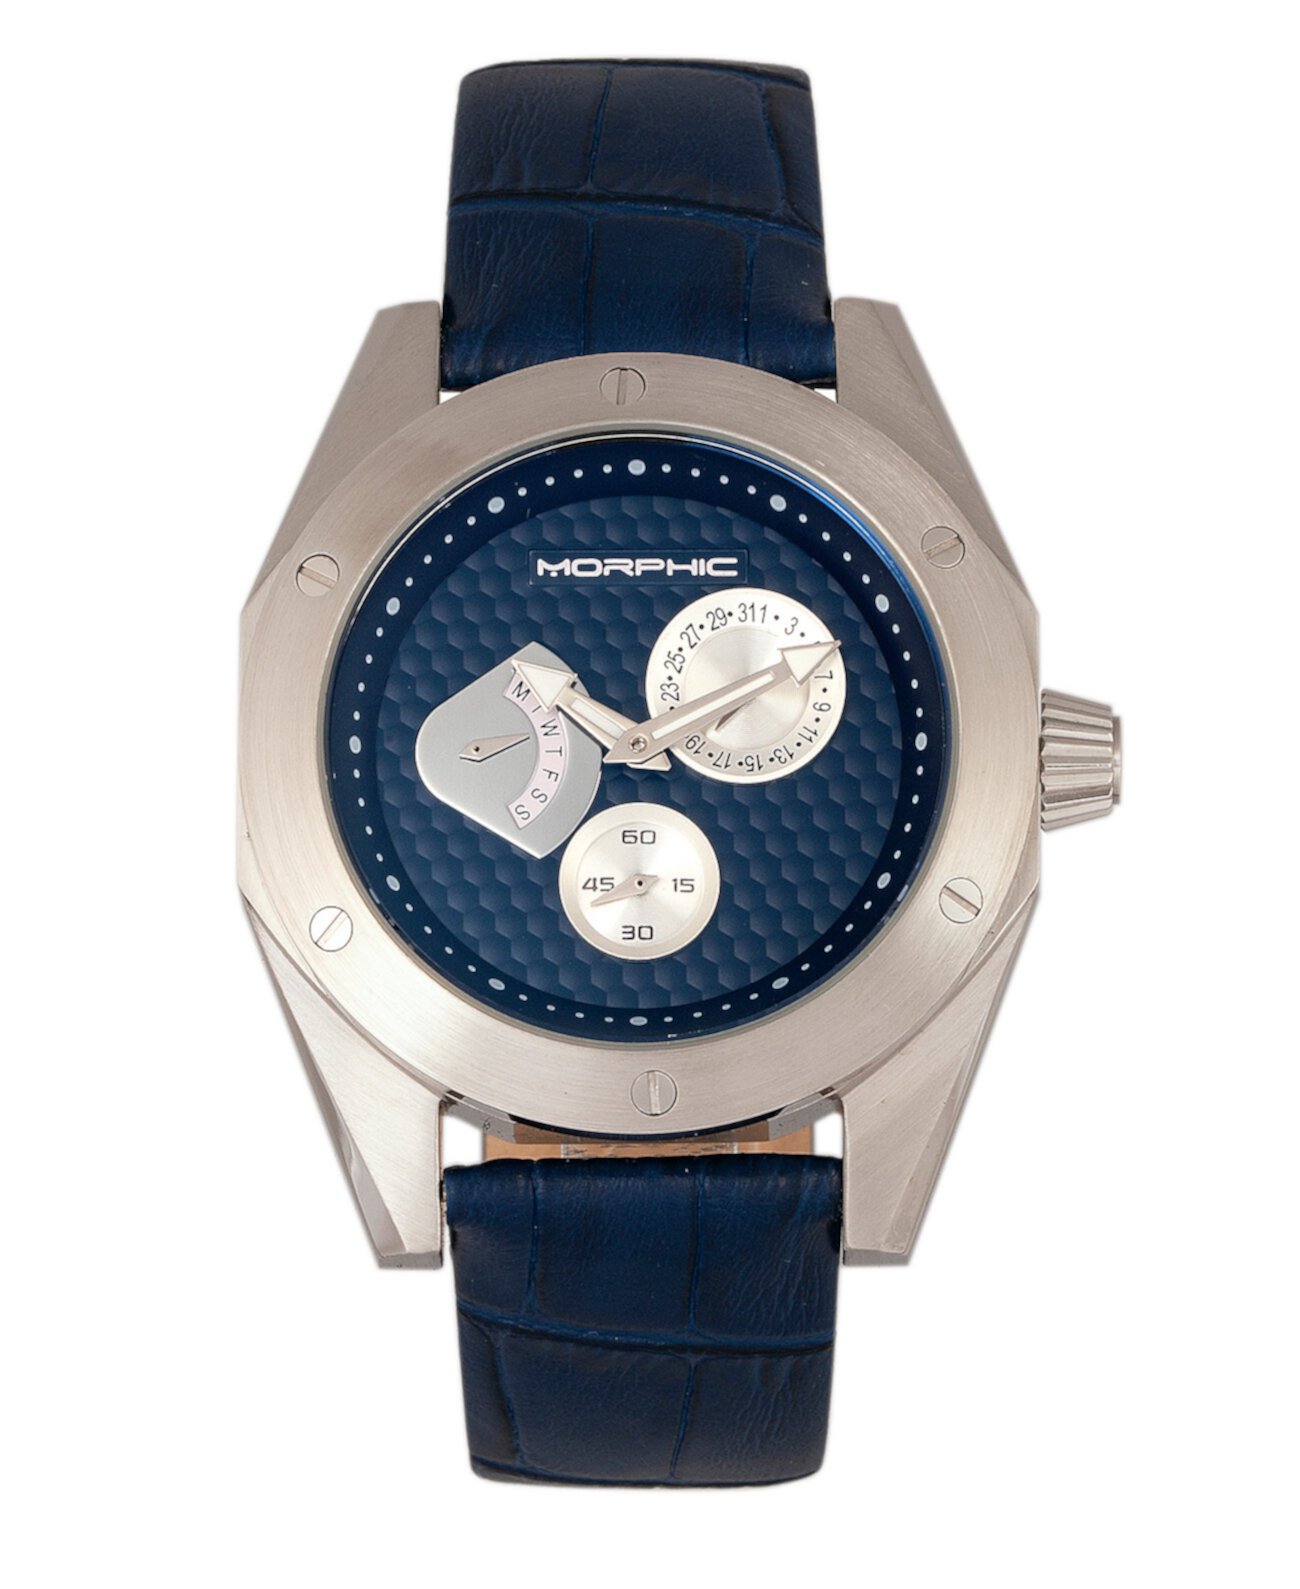 Серия M46, Серебряный корпус, Мужские часы с темно-синим кожаным ремешком, дата, 44 мм Morphic